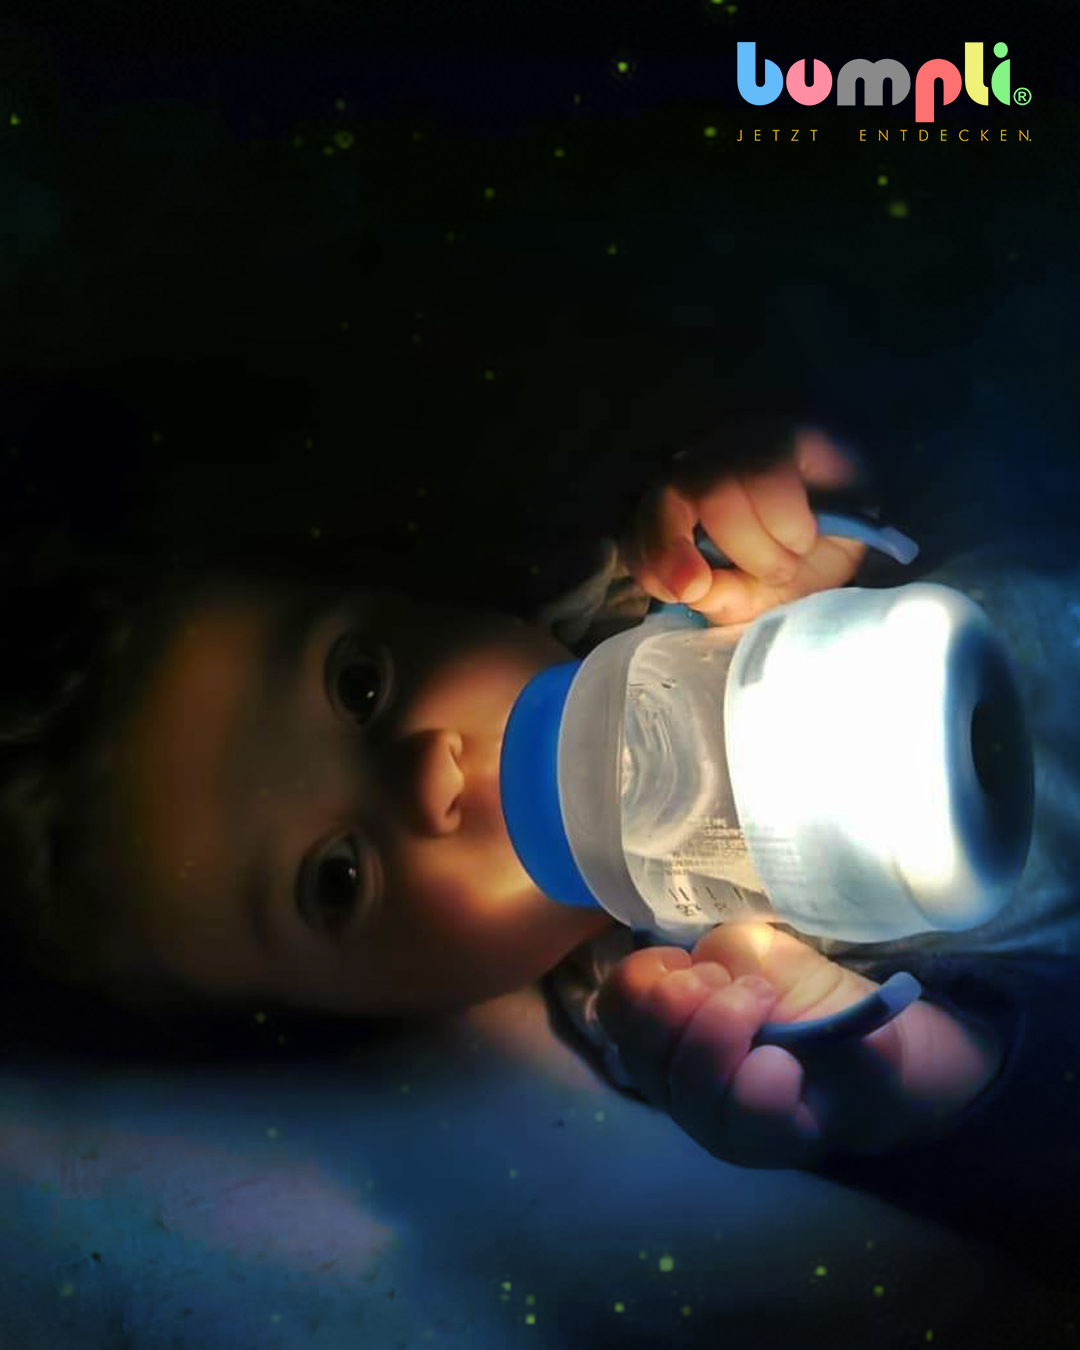 cshow - Bumpli Trinkflasche mit Nachtlicht: Warum unser 1-Jähriger begeistert ist